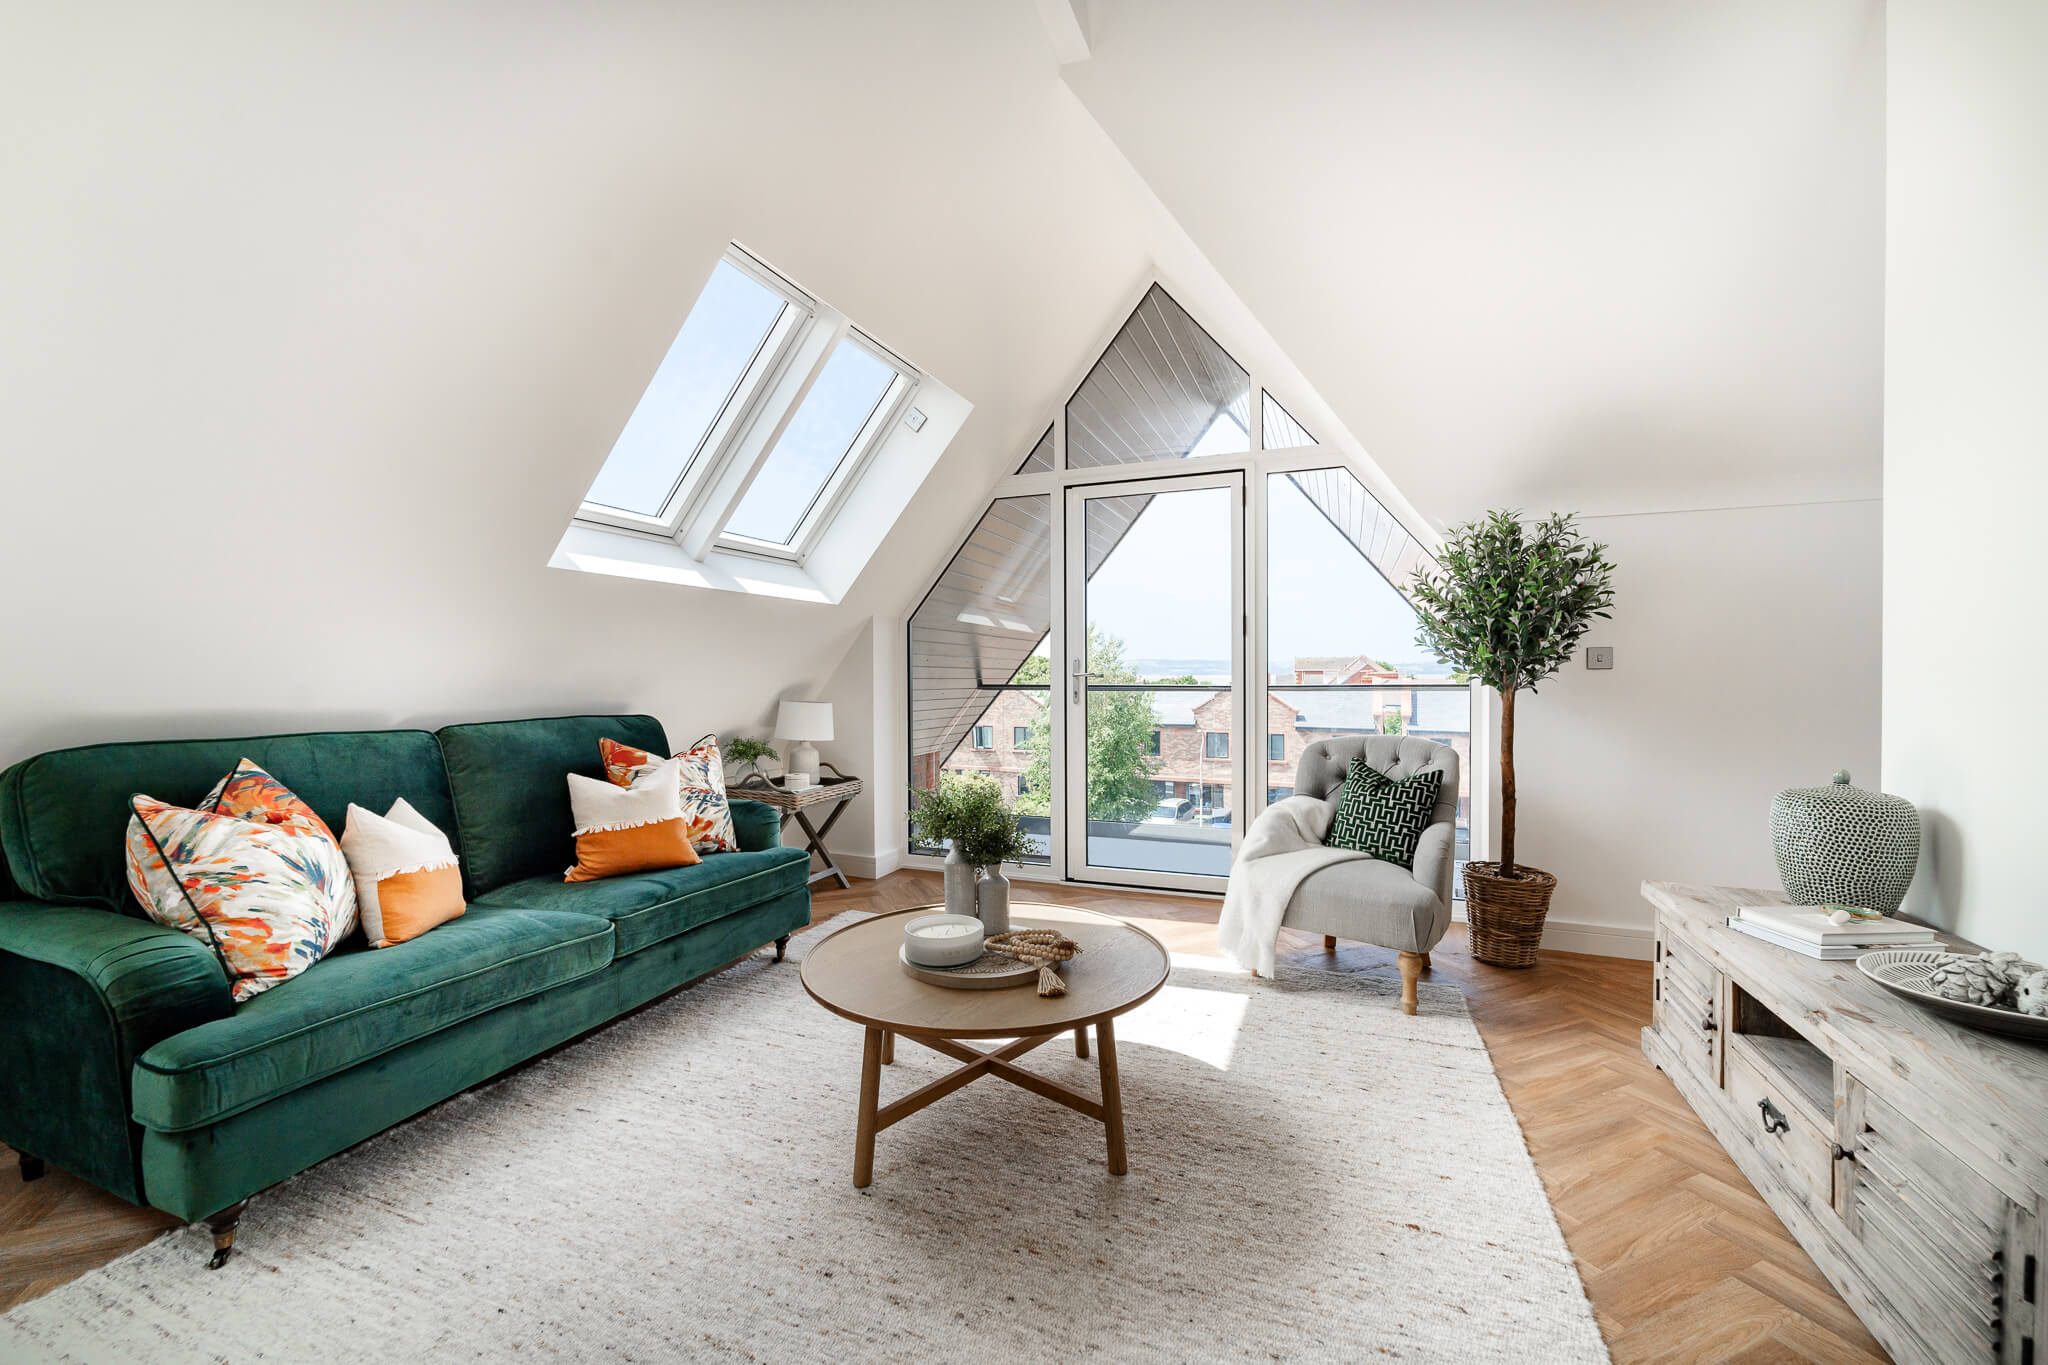 Dachboden-Wohnzimmer mit VELUX-Fenstern, grünem Sofa und städtischer Aussicht.